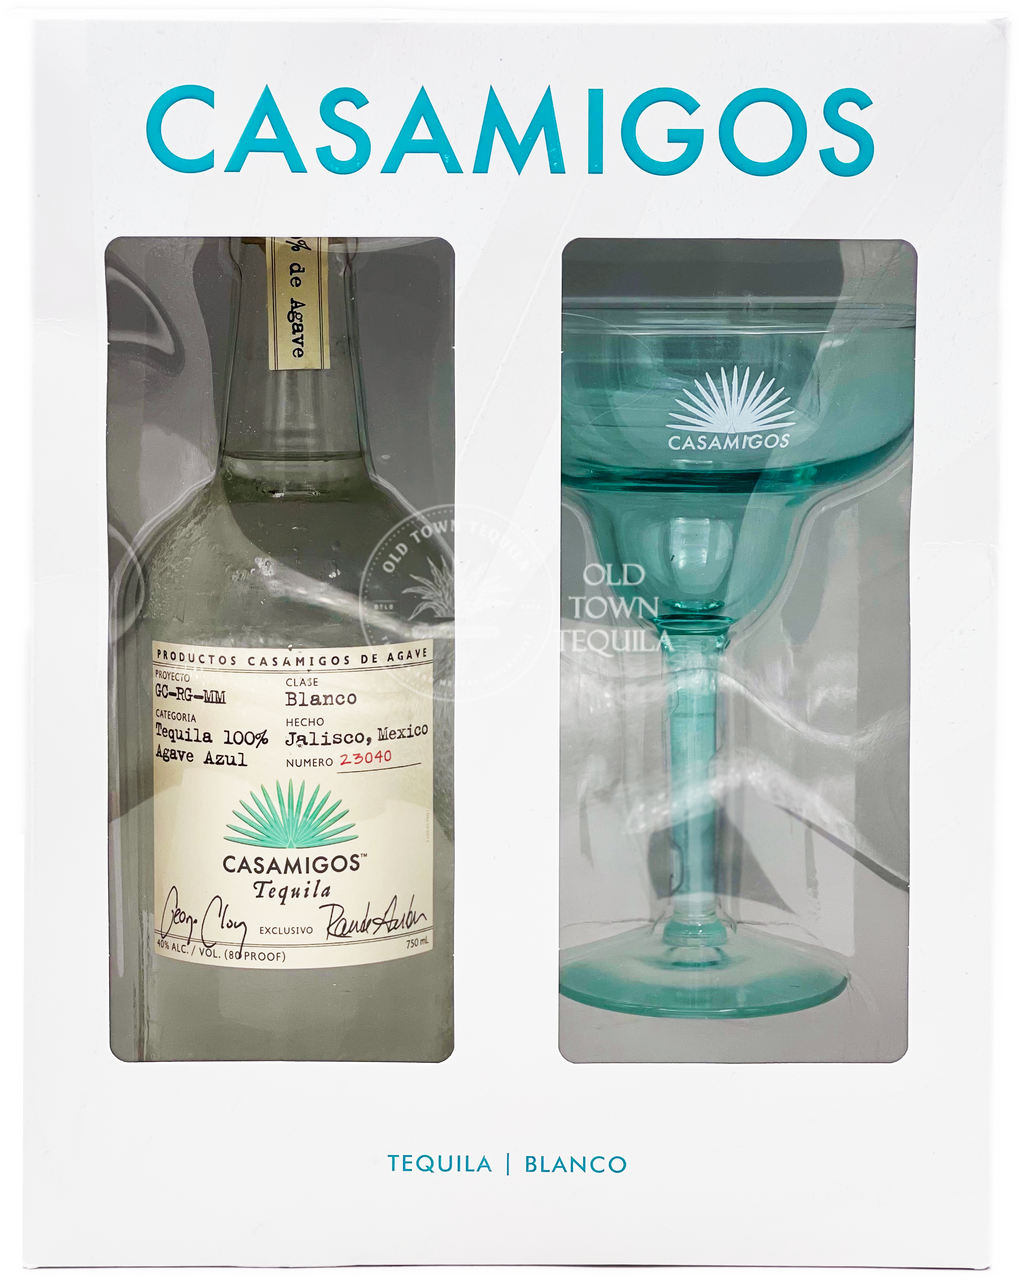 Buy & Share Casamigos Margarita Gift Set Online!